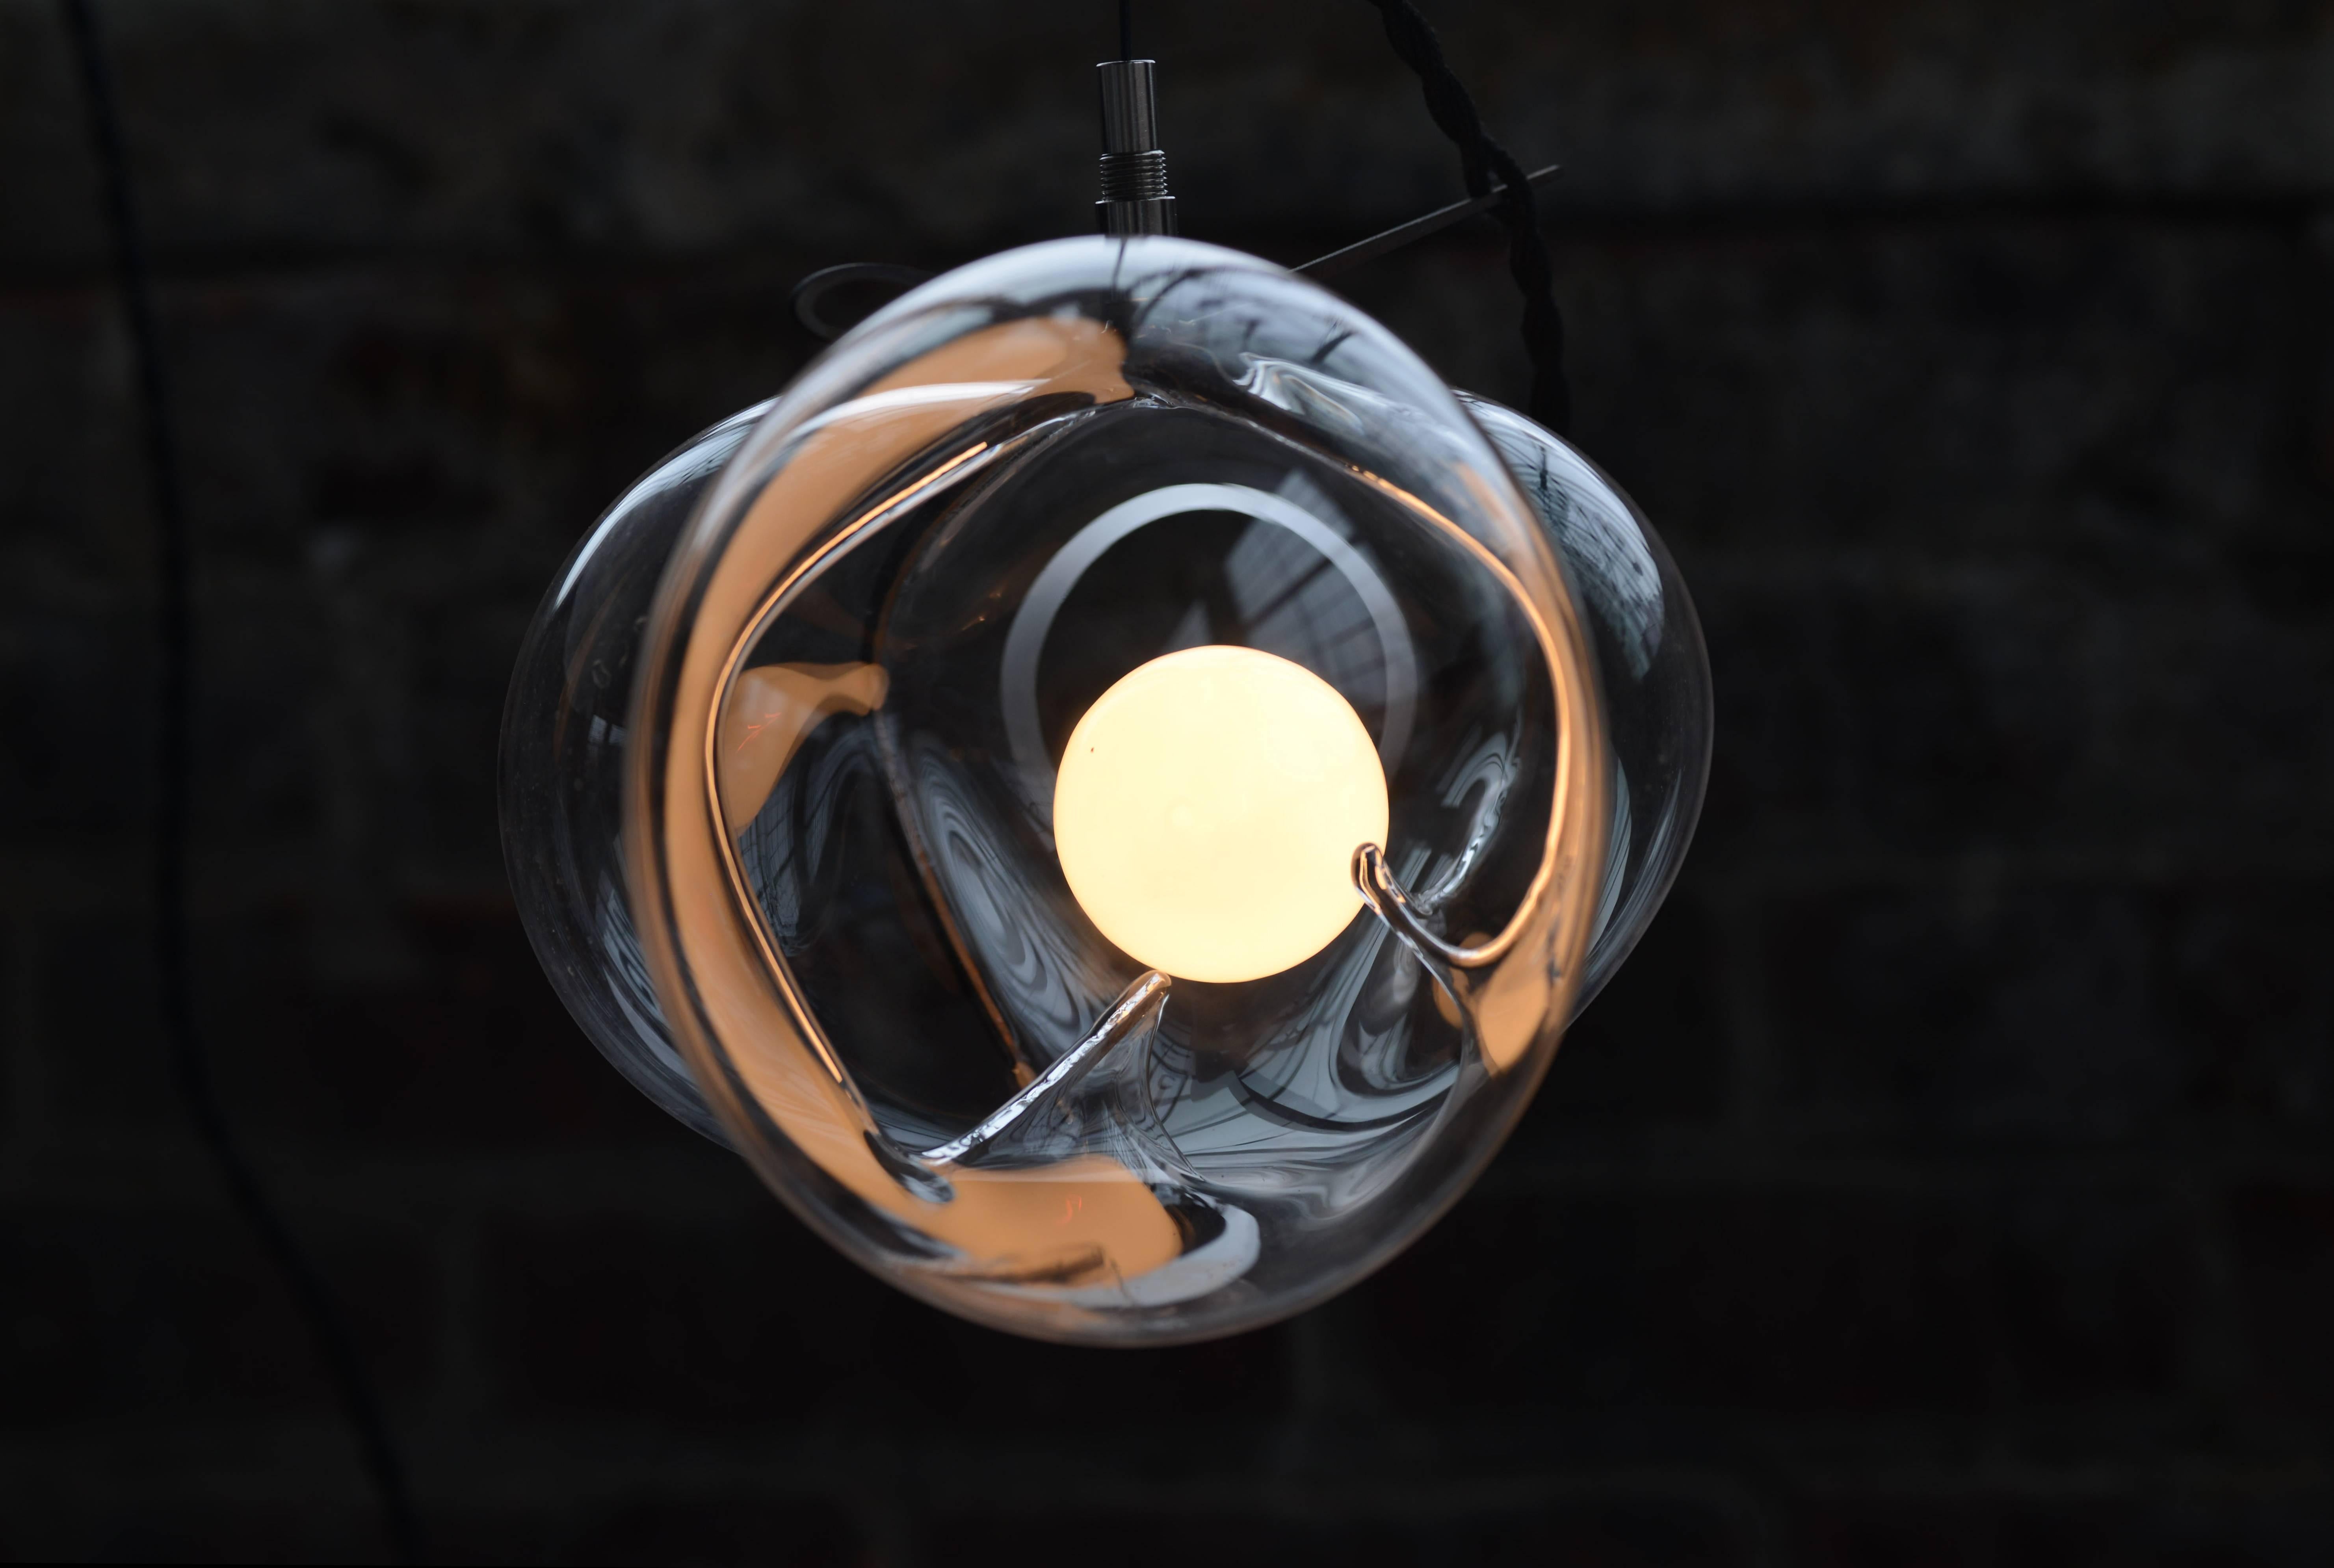 Aufhängung aus Kristallglas, exhale von Catie Newell, WDSTCK Studio
Maße: Durchmesser 30 cm
MATERIALIEN: Kristallglas, rostfreier Stahl.

Exhale umhüllt gekonnt einen einzelnen Glasblasen in
eine starre Metallstruktur. Die Metallform schränkt